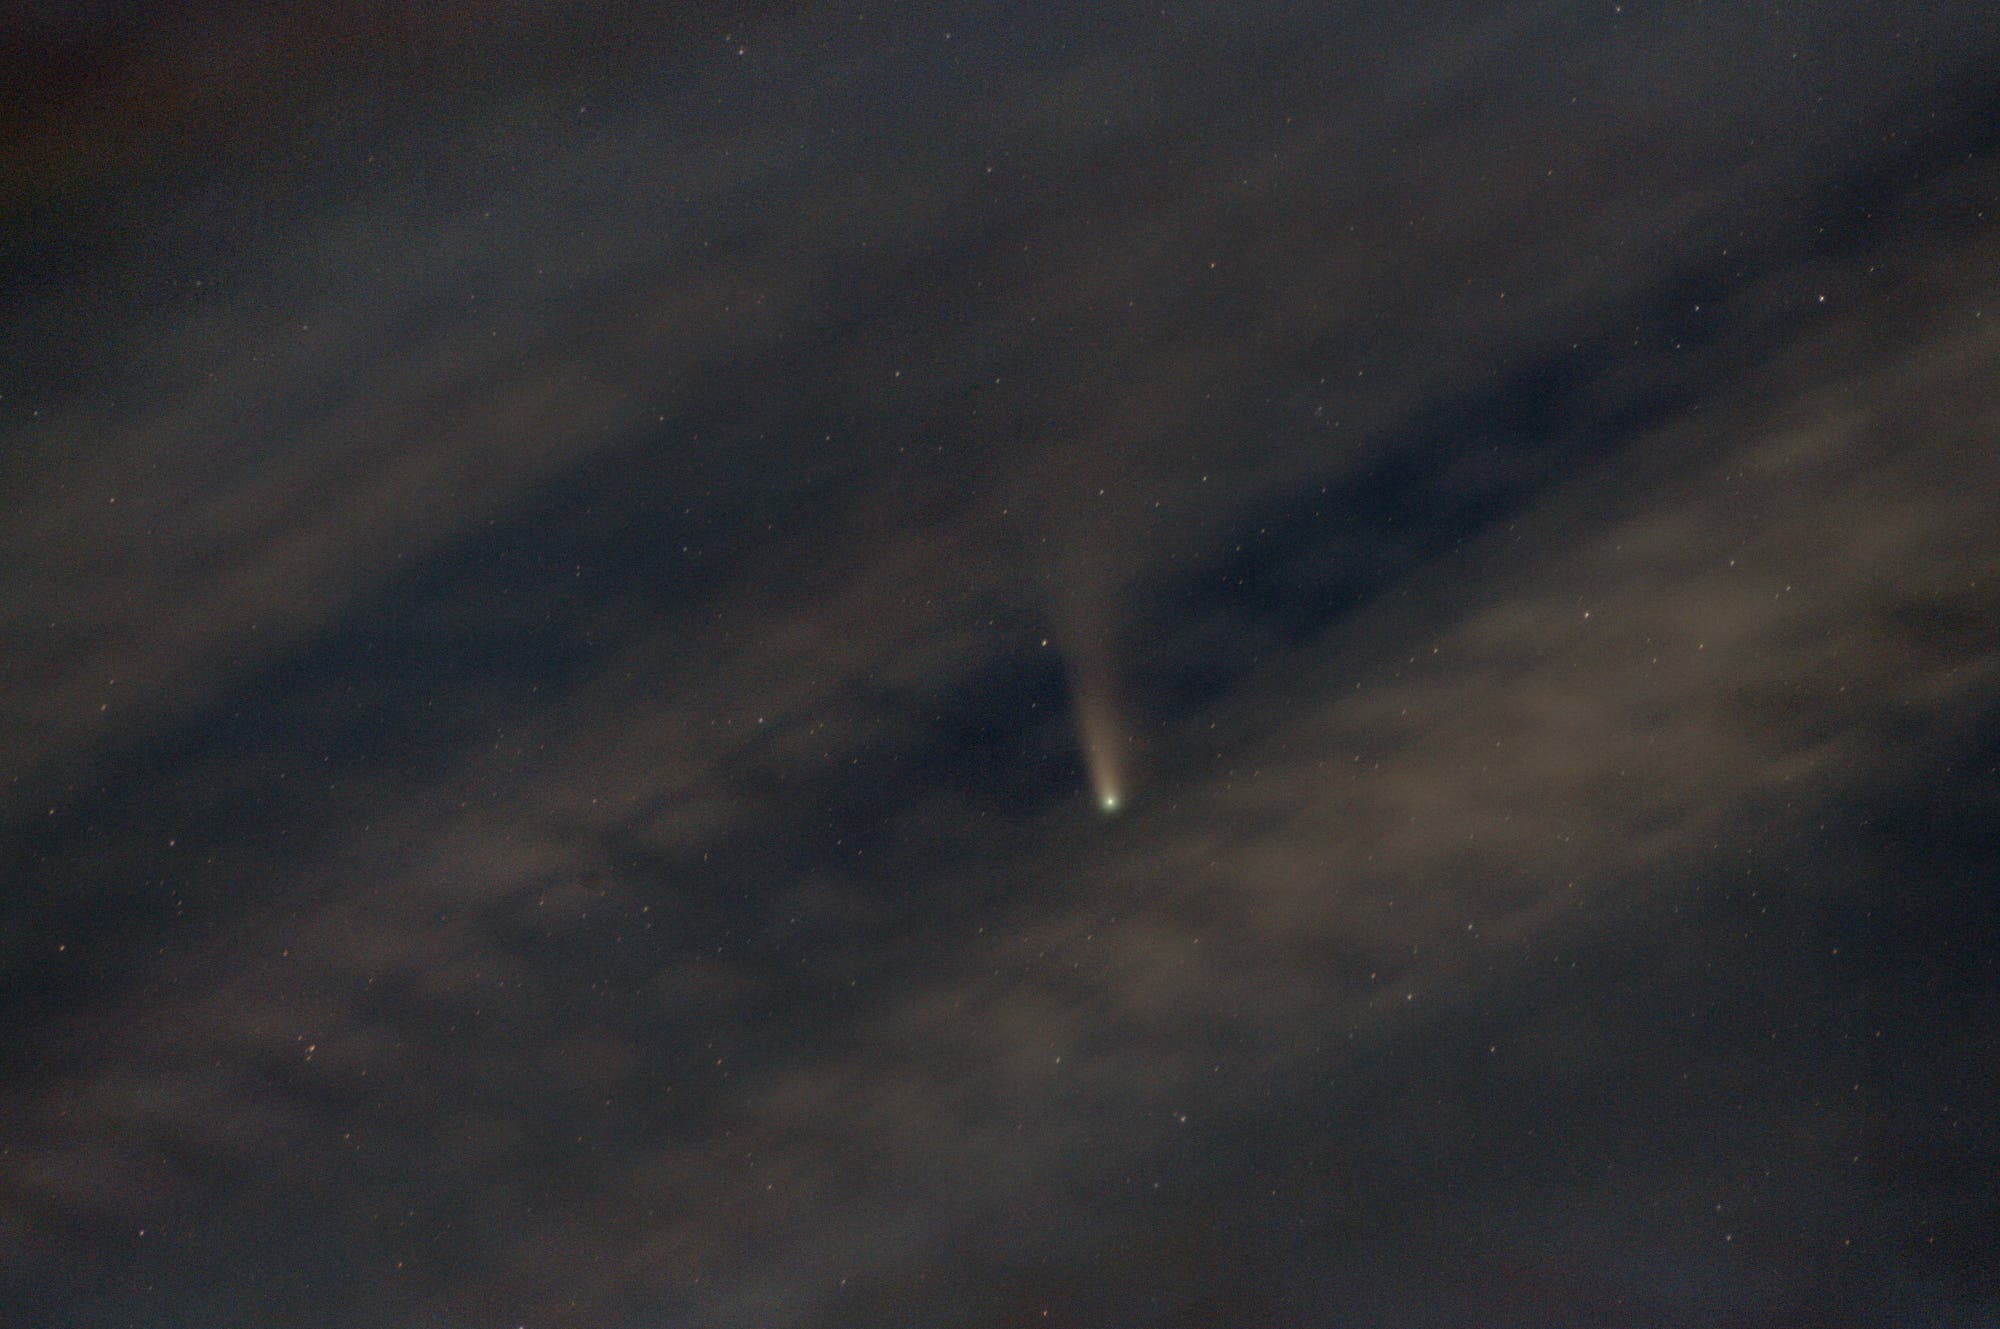 Komet C/2020 F3 (Neowise), die späte nautische Dämmerung und ein Stilleben mit Wolken